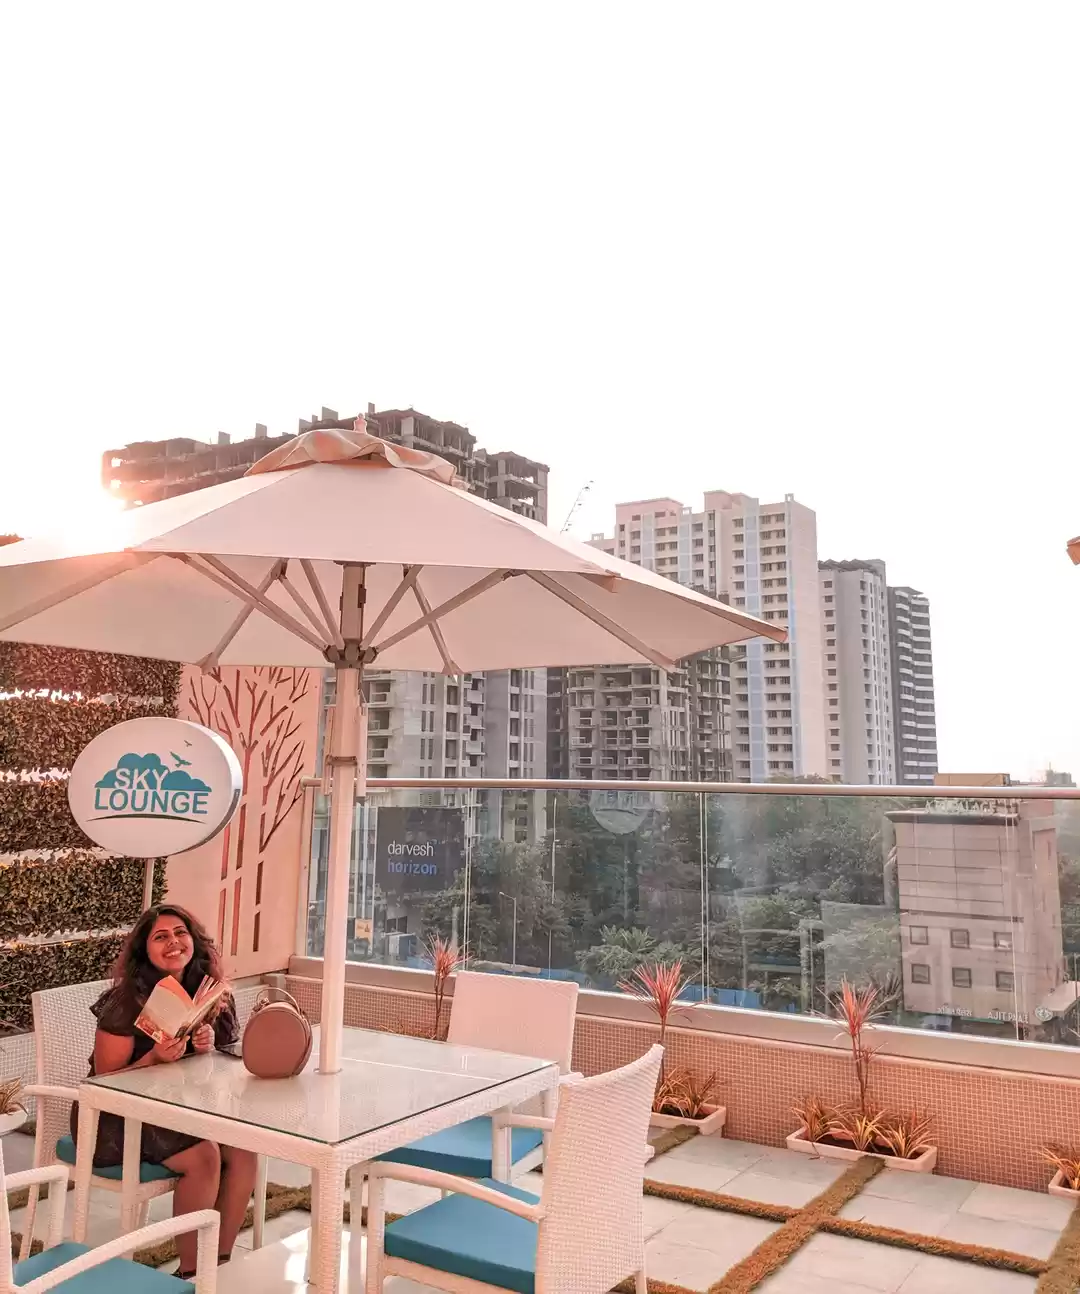 Sarovar Hotels & Resorts on LinkedIn: Sarovar Hotels Opens Royal Hometel  Suites in Dahisar, Mumbai